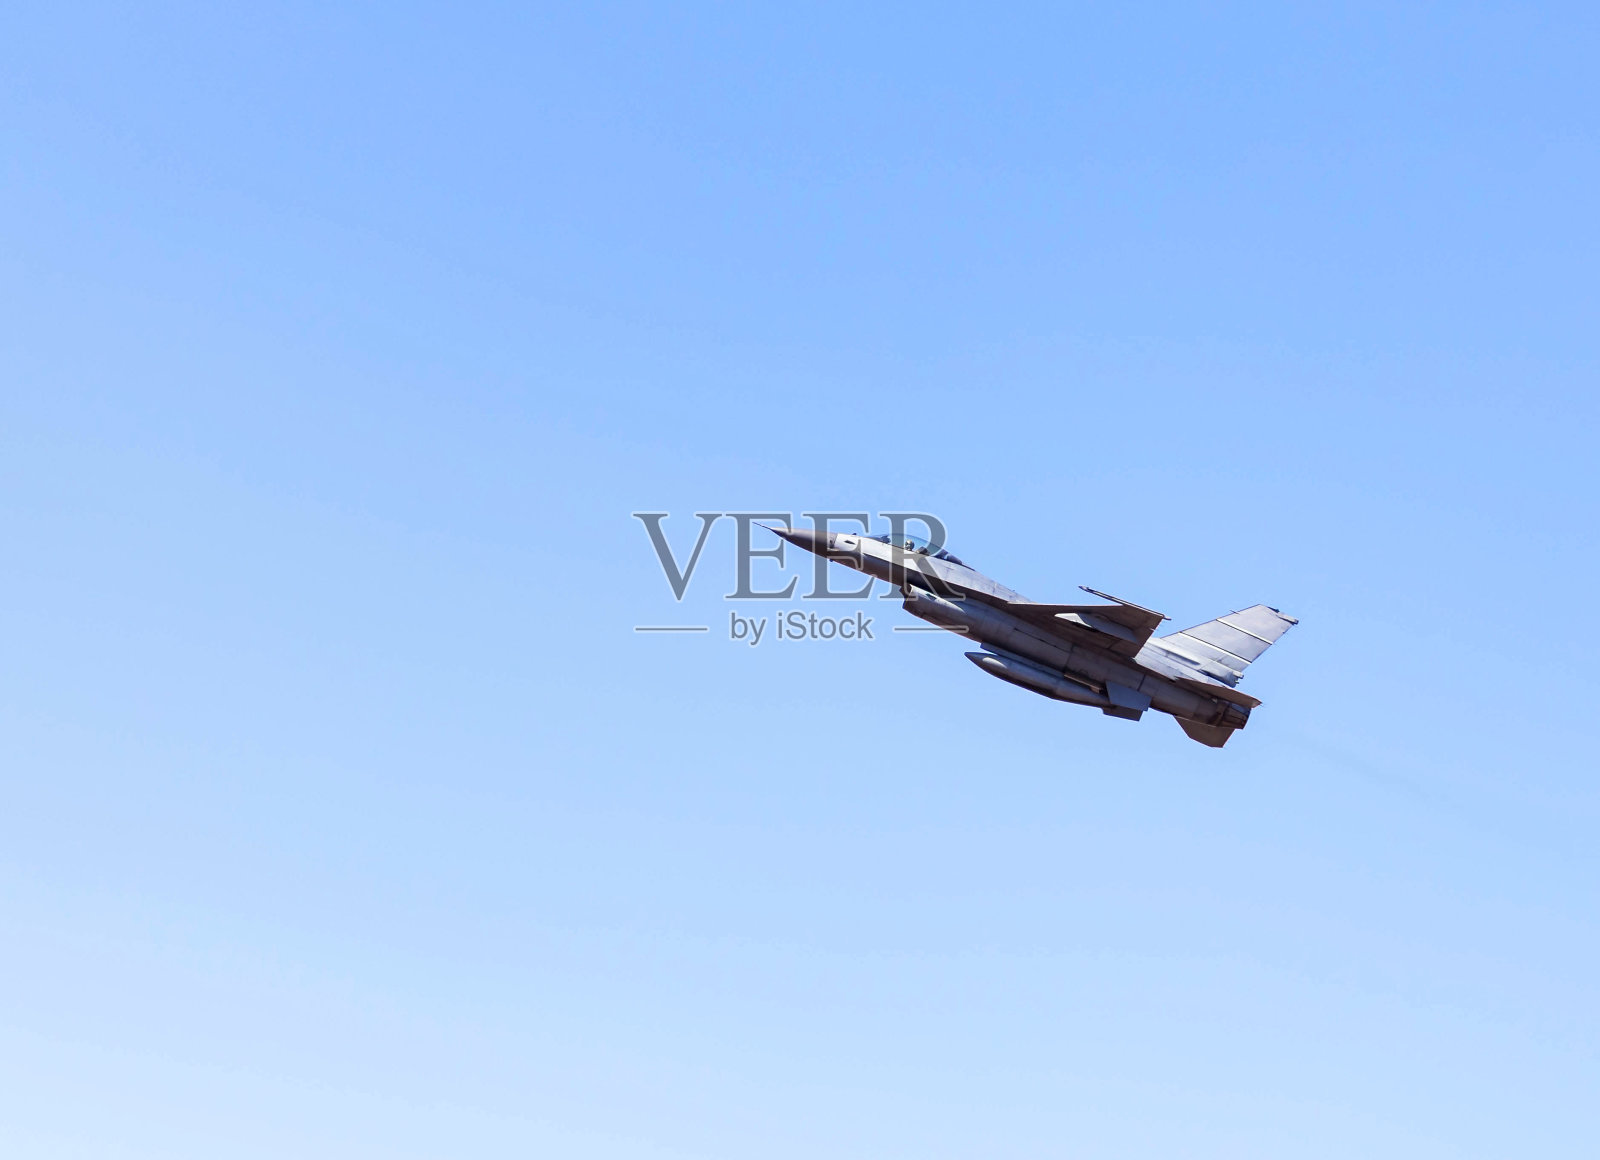 F16猎鹰战斗机军用飞机飞行照片摄影图片